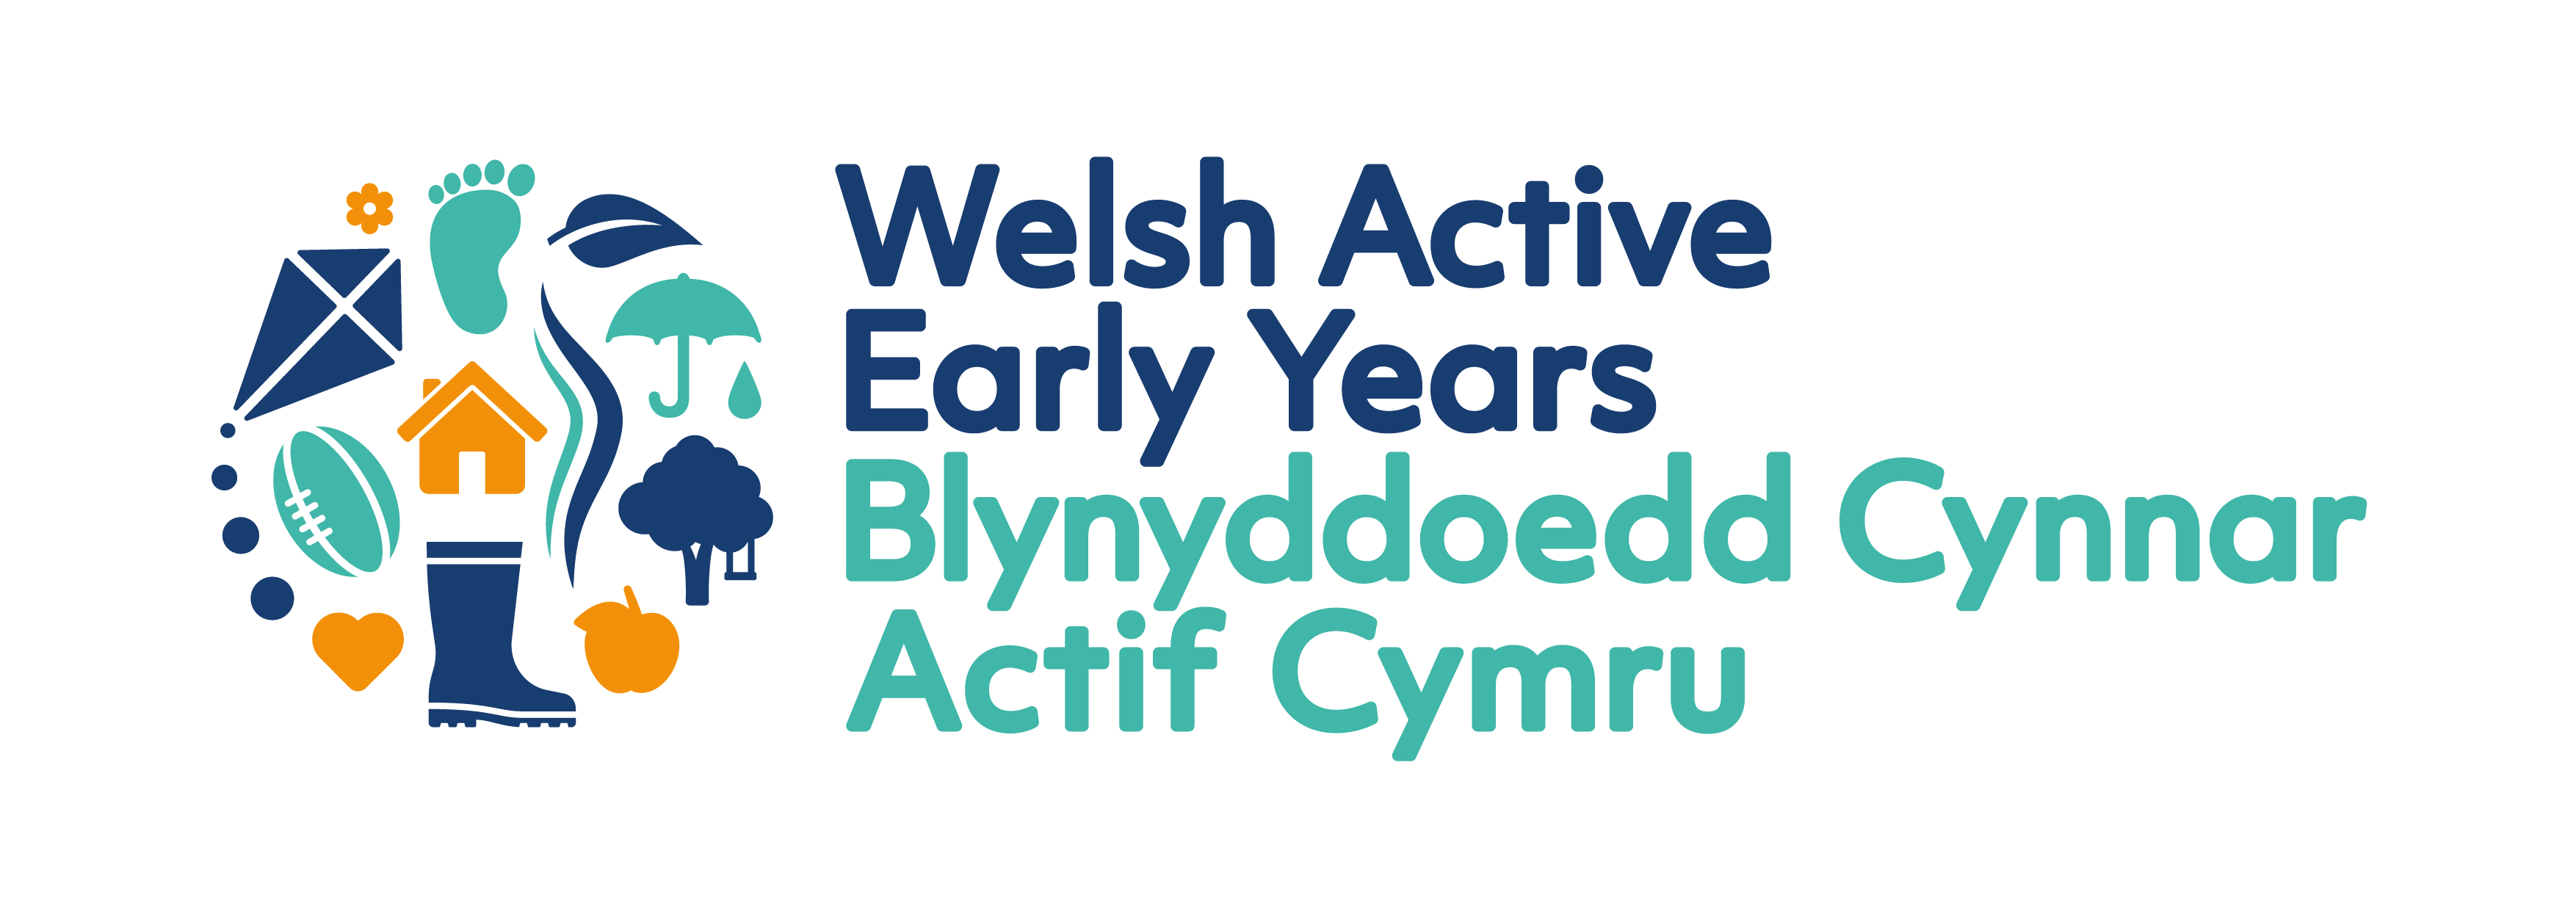 Welsh Active